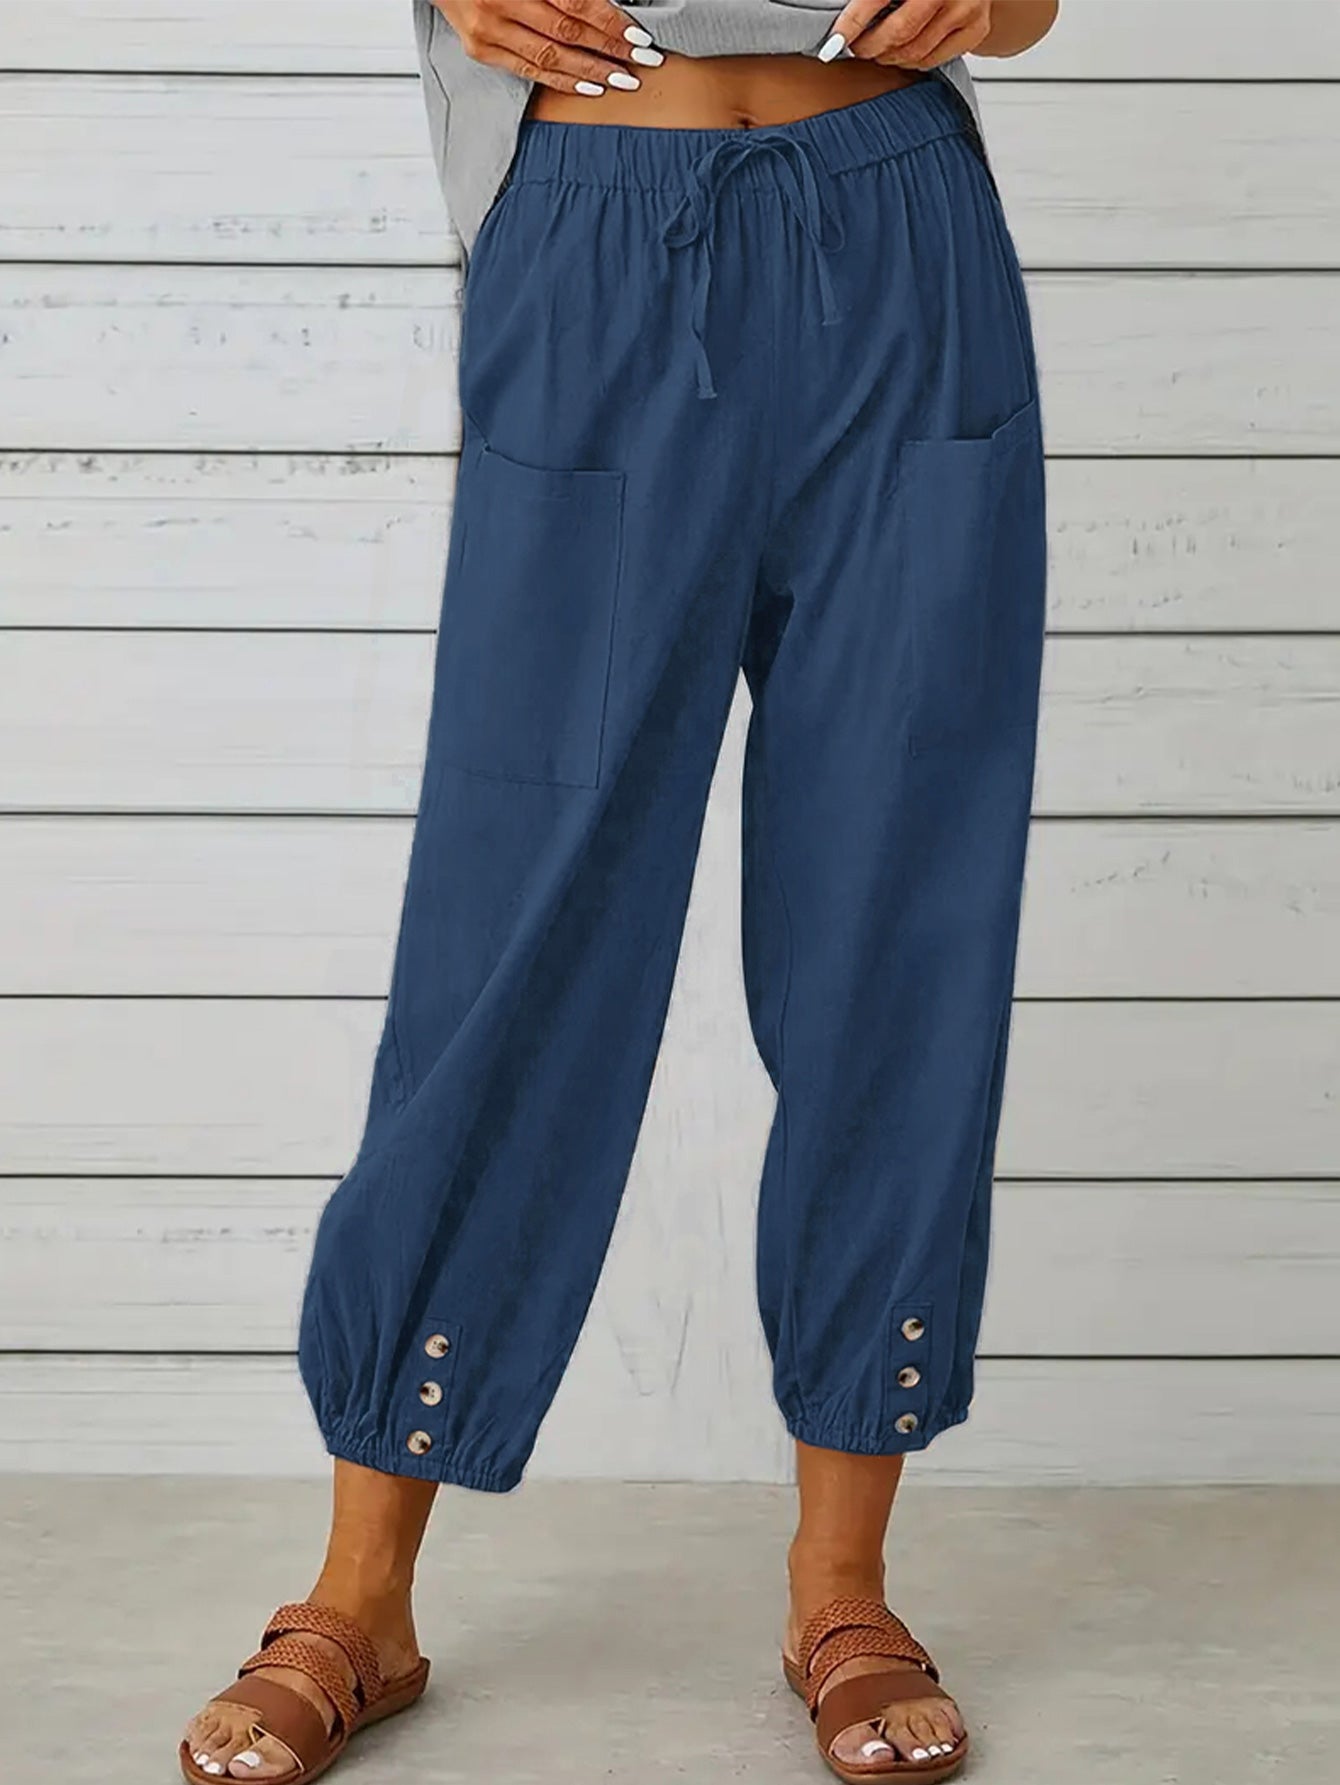 Decorative Button Cropped Pants - Blue / S - Bottoms - Pants - 11 - 2024